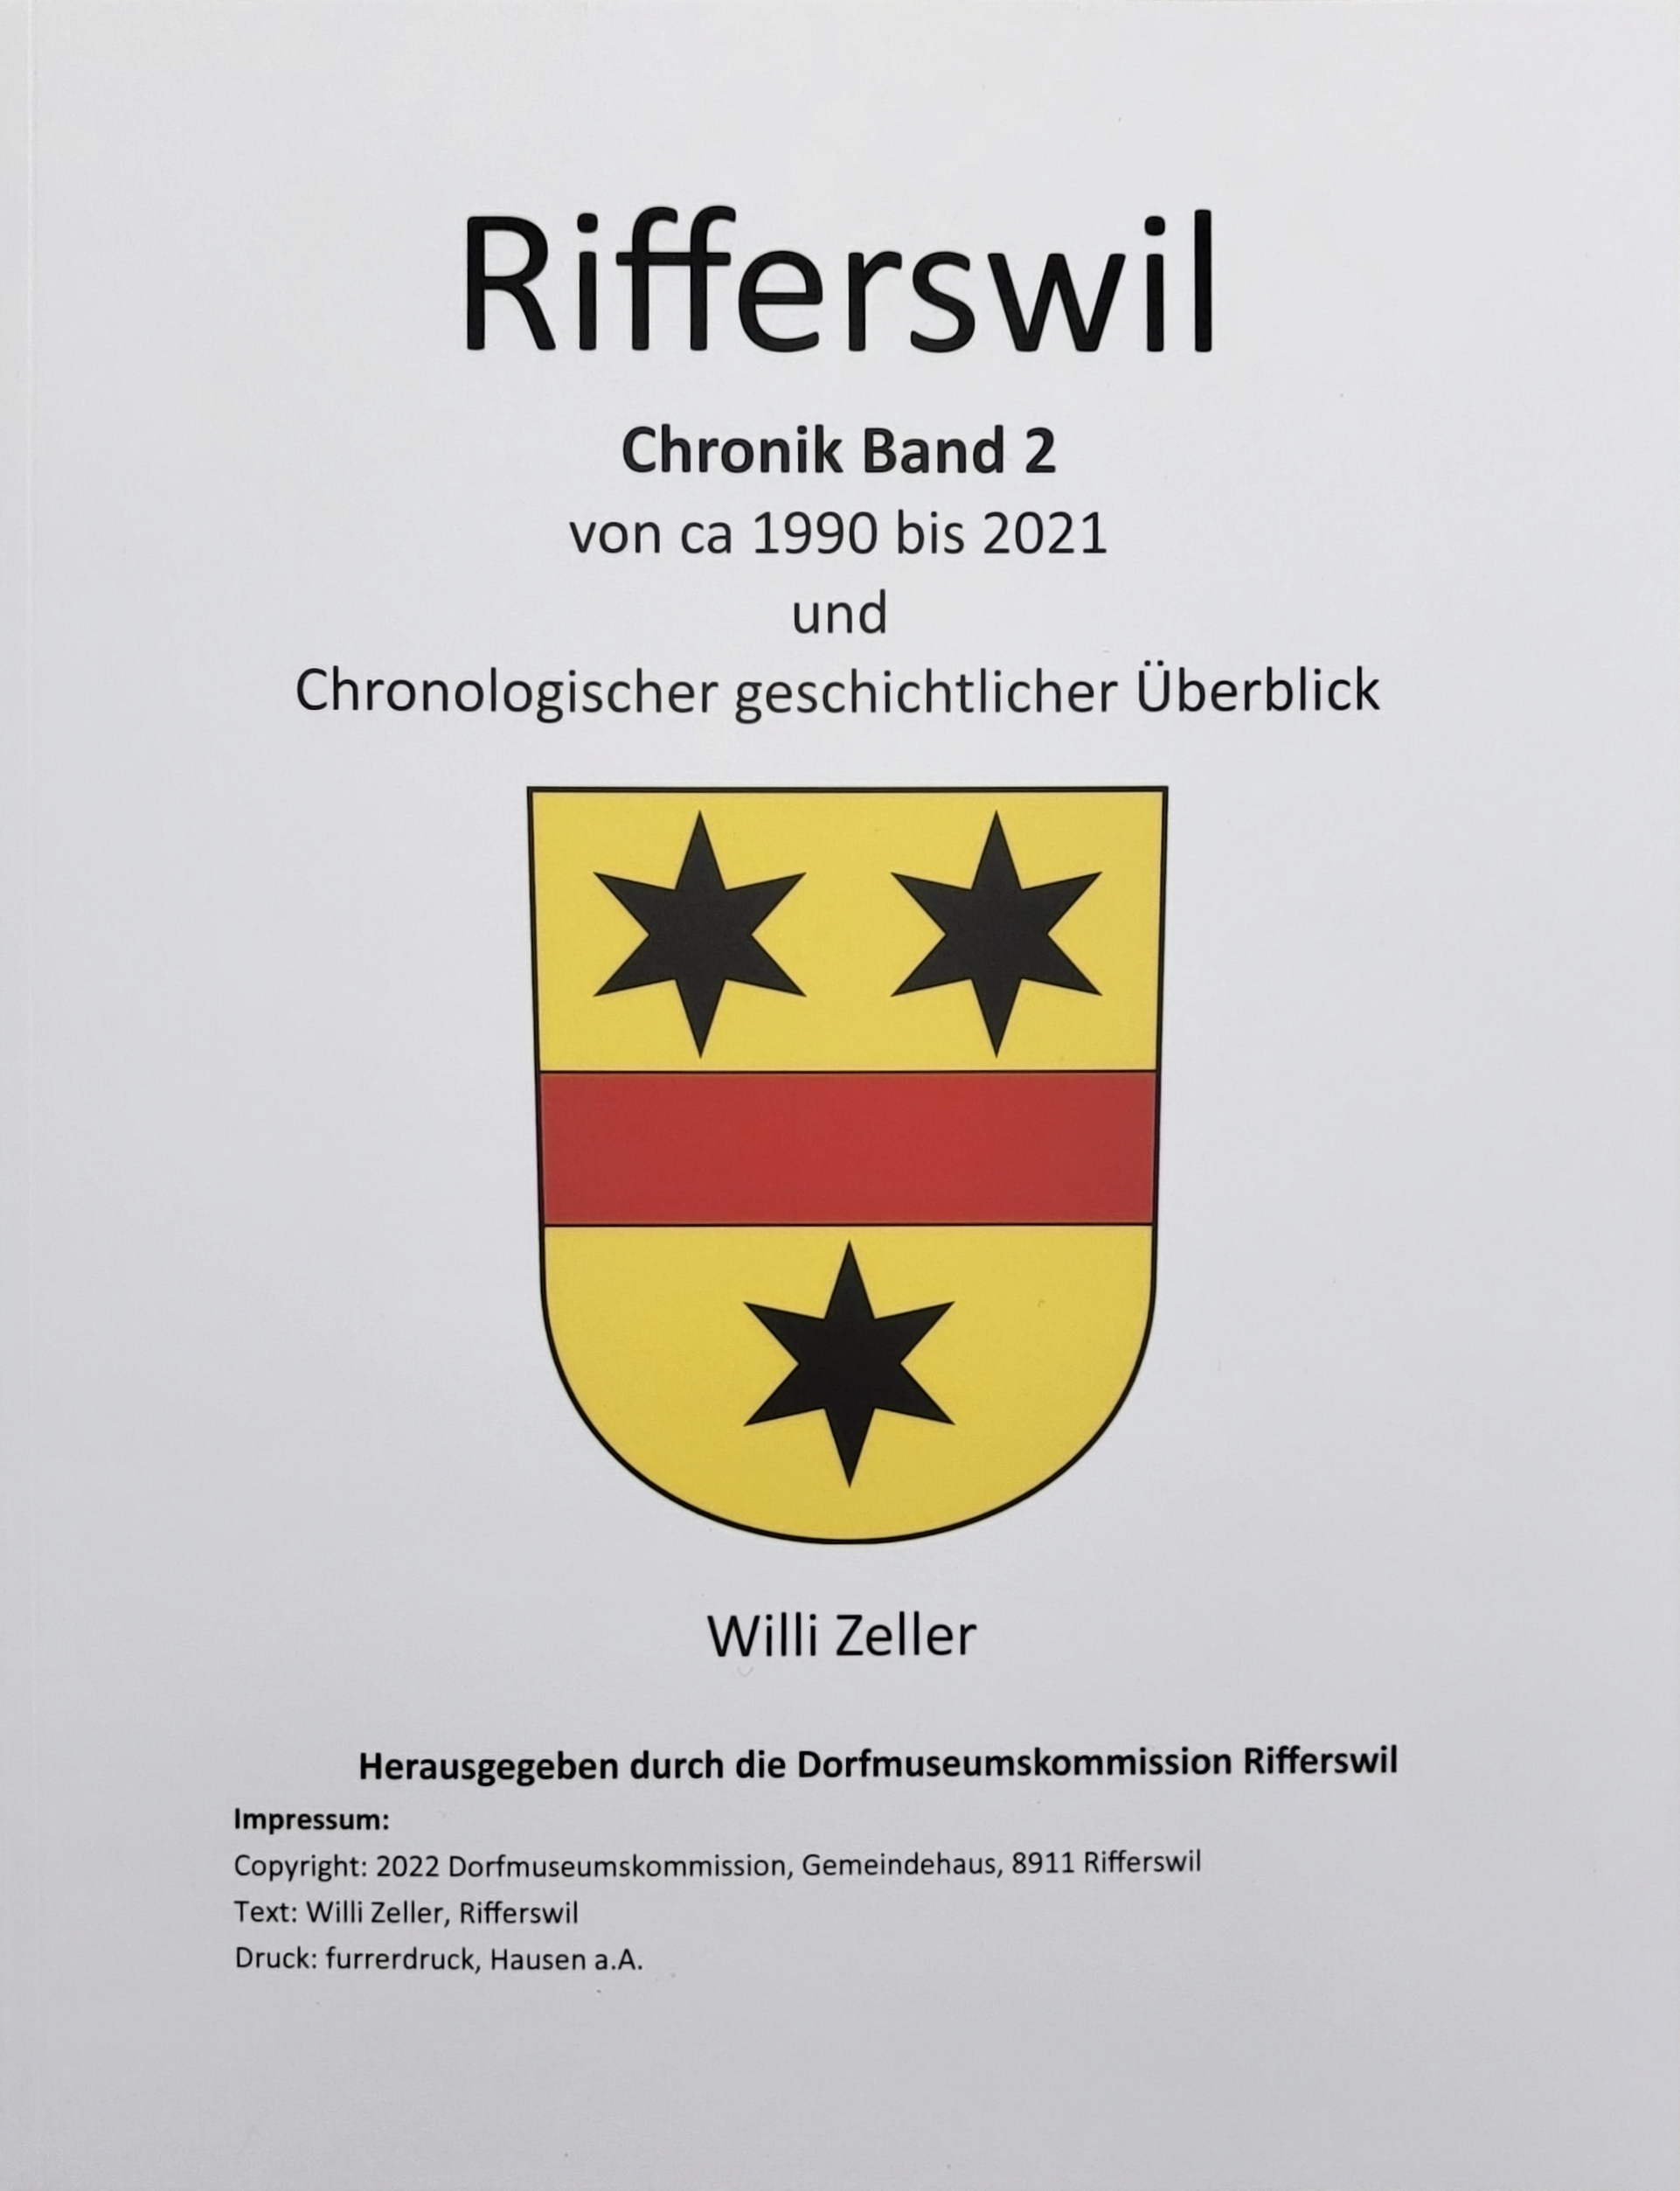 Rifferswil Chronik Band 2